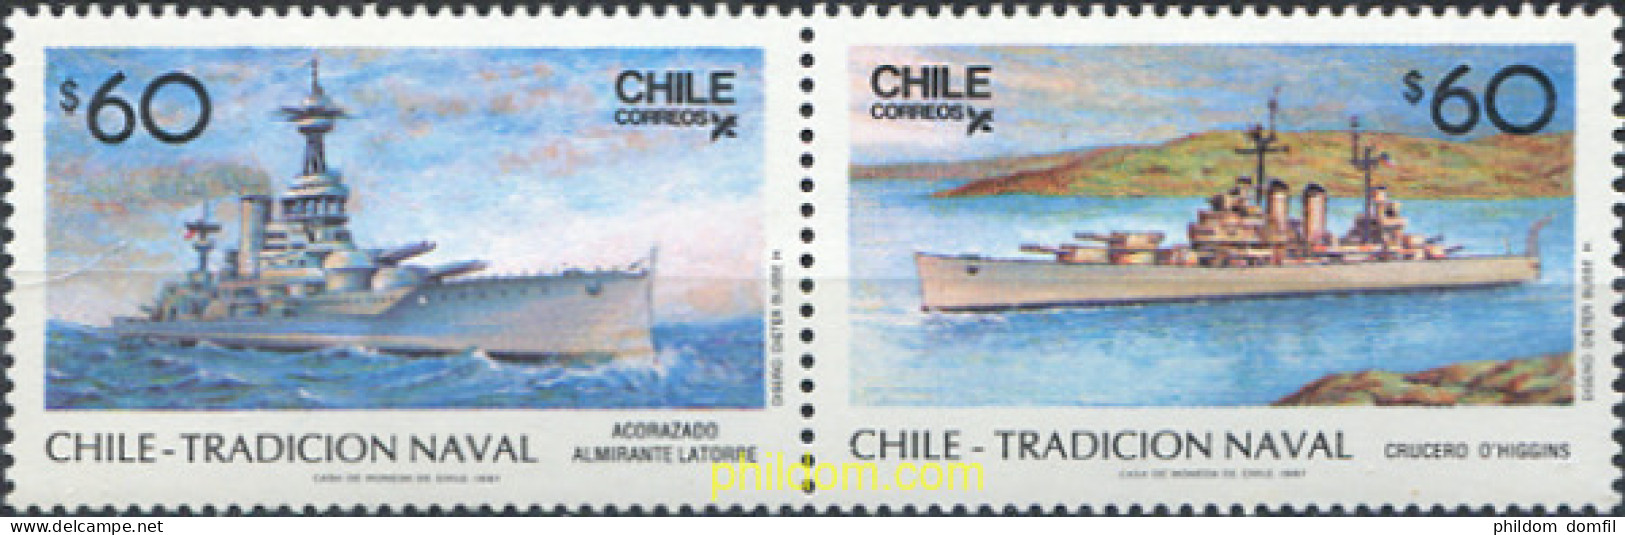 303406 MNH CHILE 1987 CHILE TRADICION NAVAL - Chili